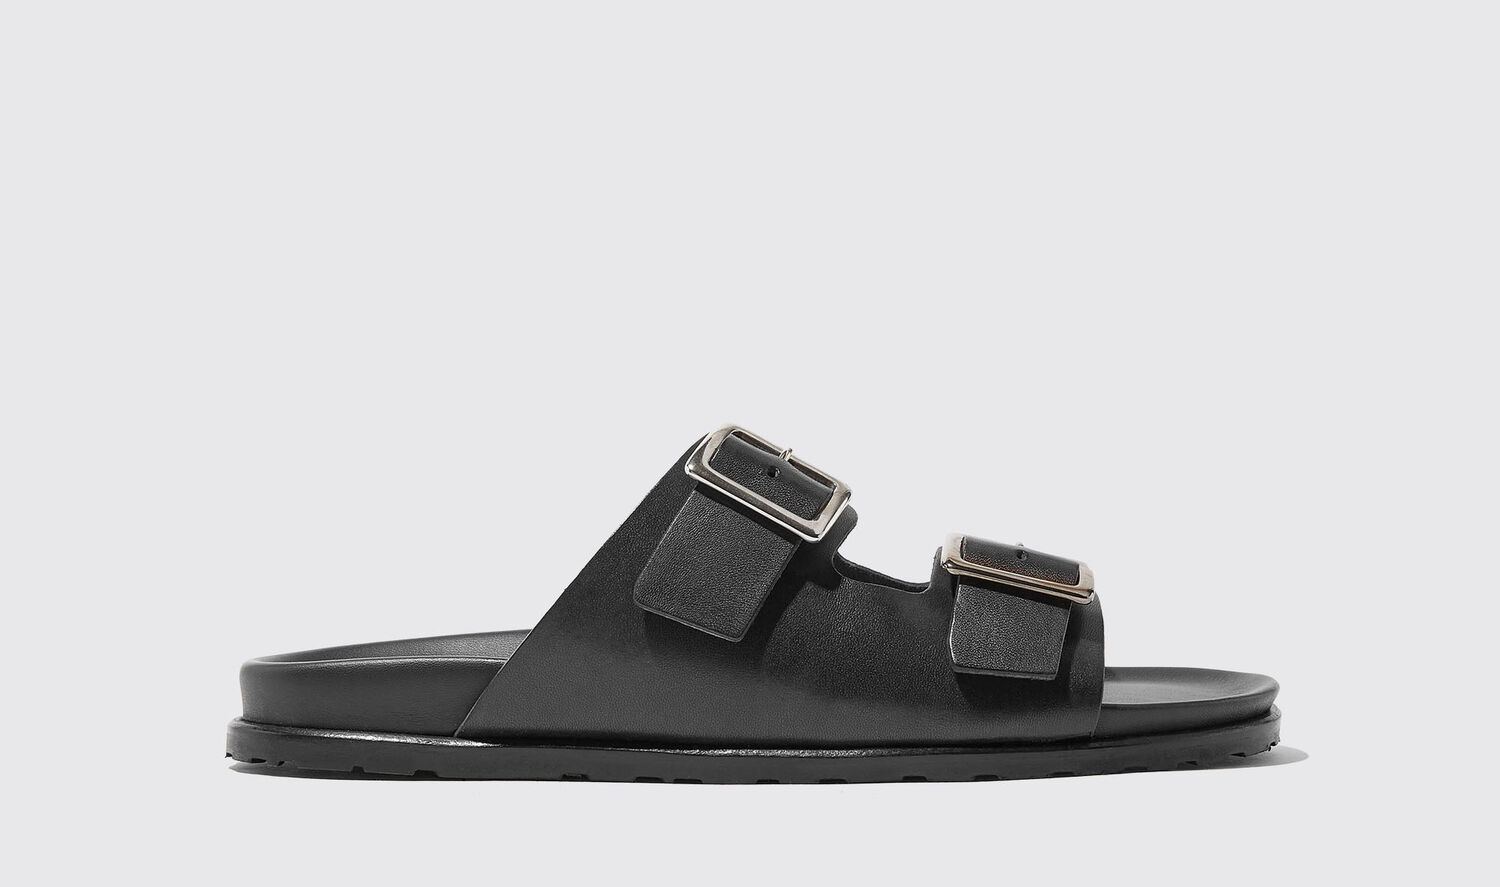 Scarosso Sandals Enea Nero Calf Leather In Black - Calf